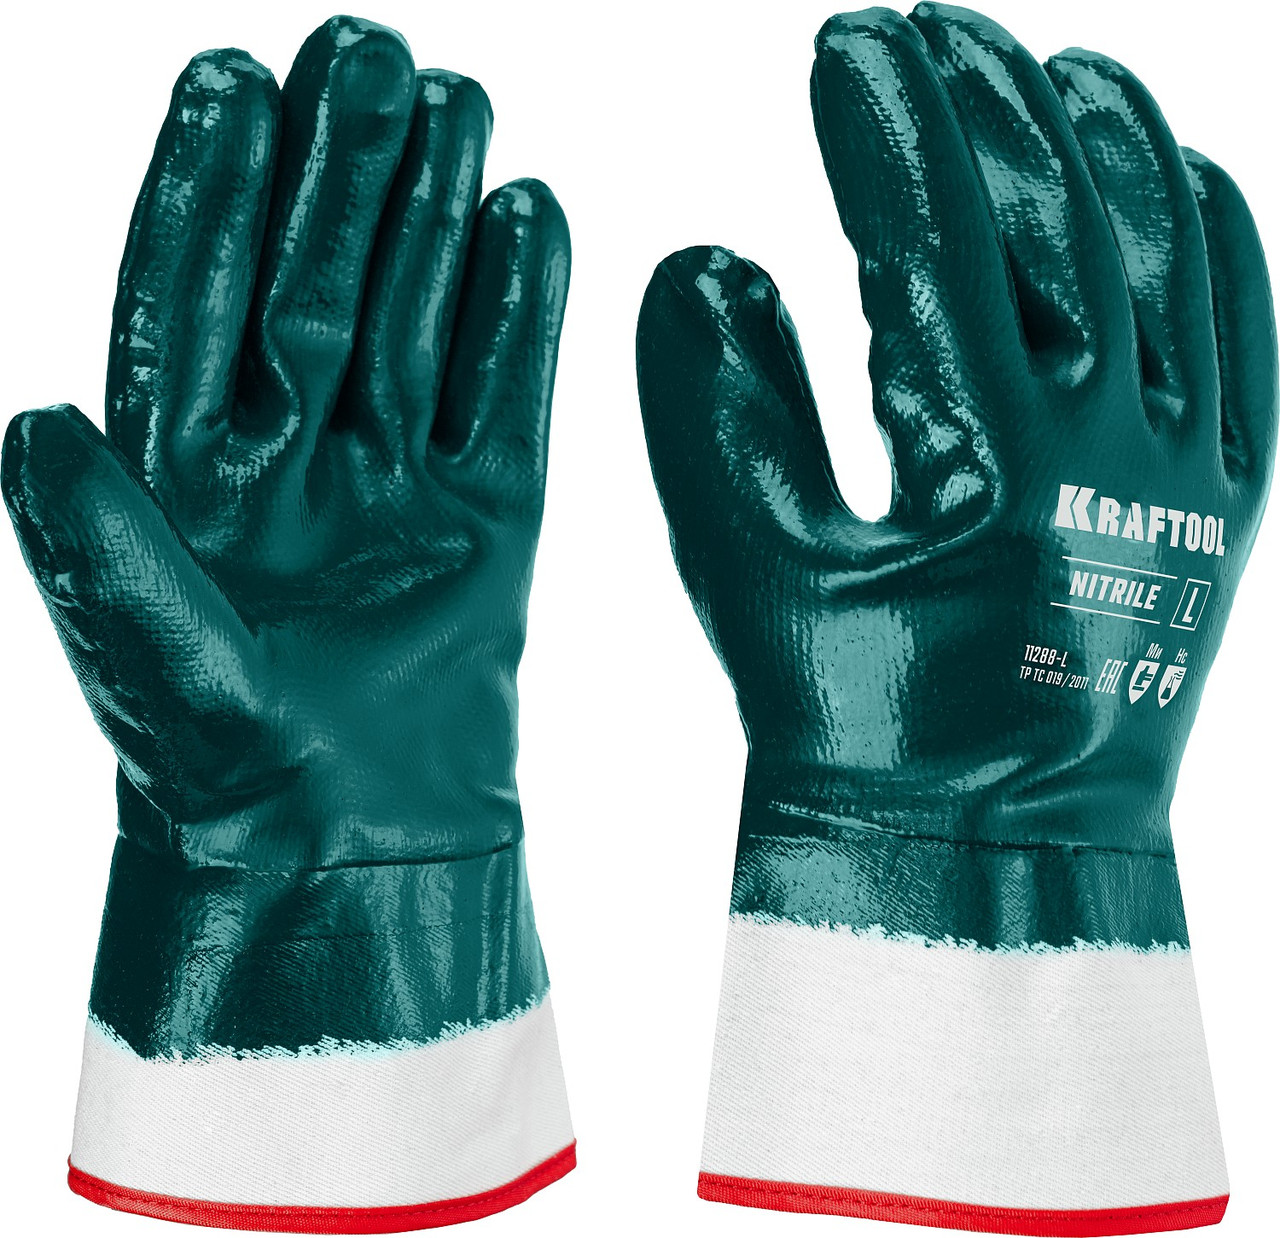 KRAFTOOL L, с нитриловым покрытием перчатки износостойкие, защита от нефтепродуктов HYKRAFT 11288-L